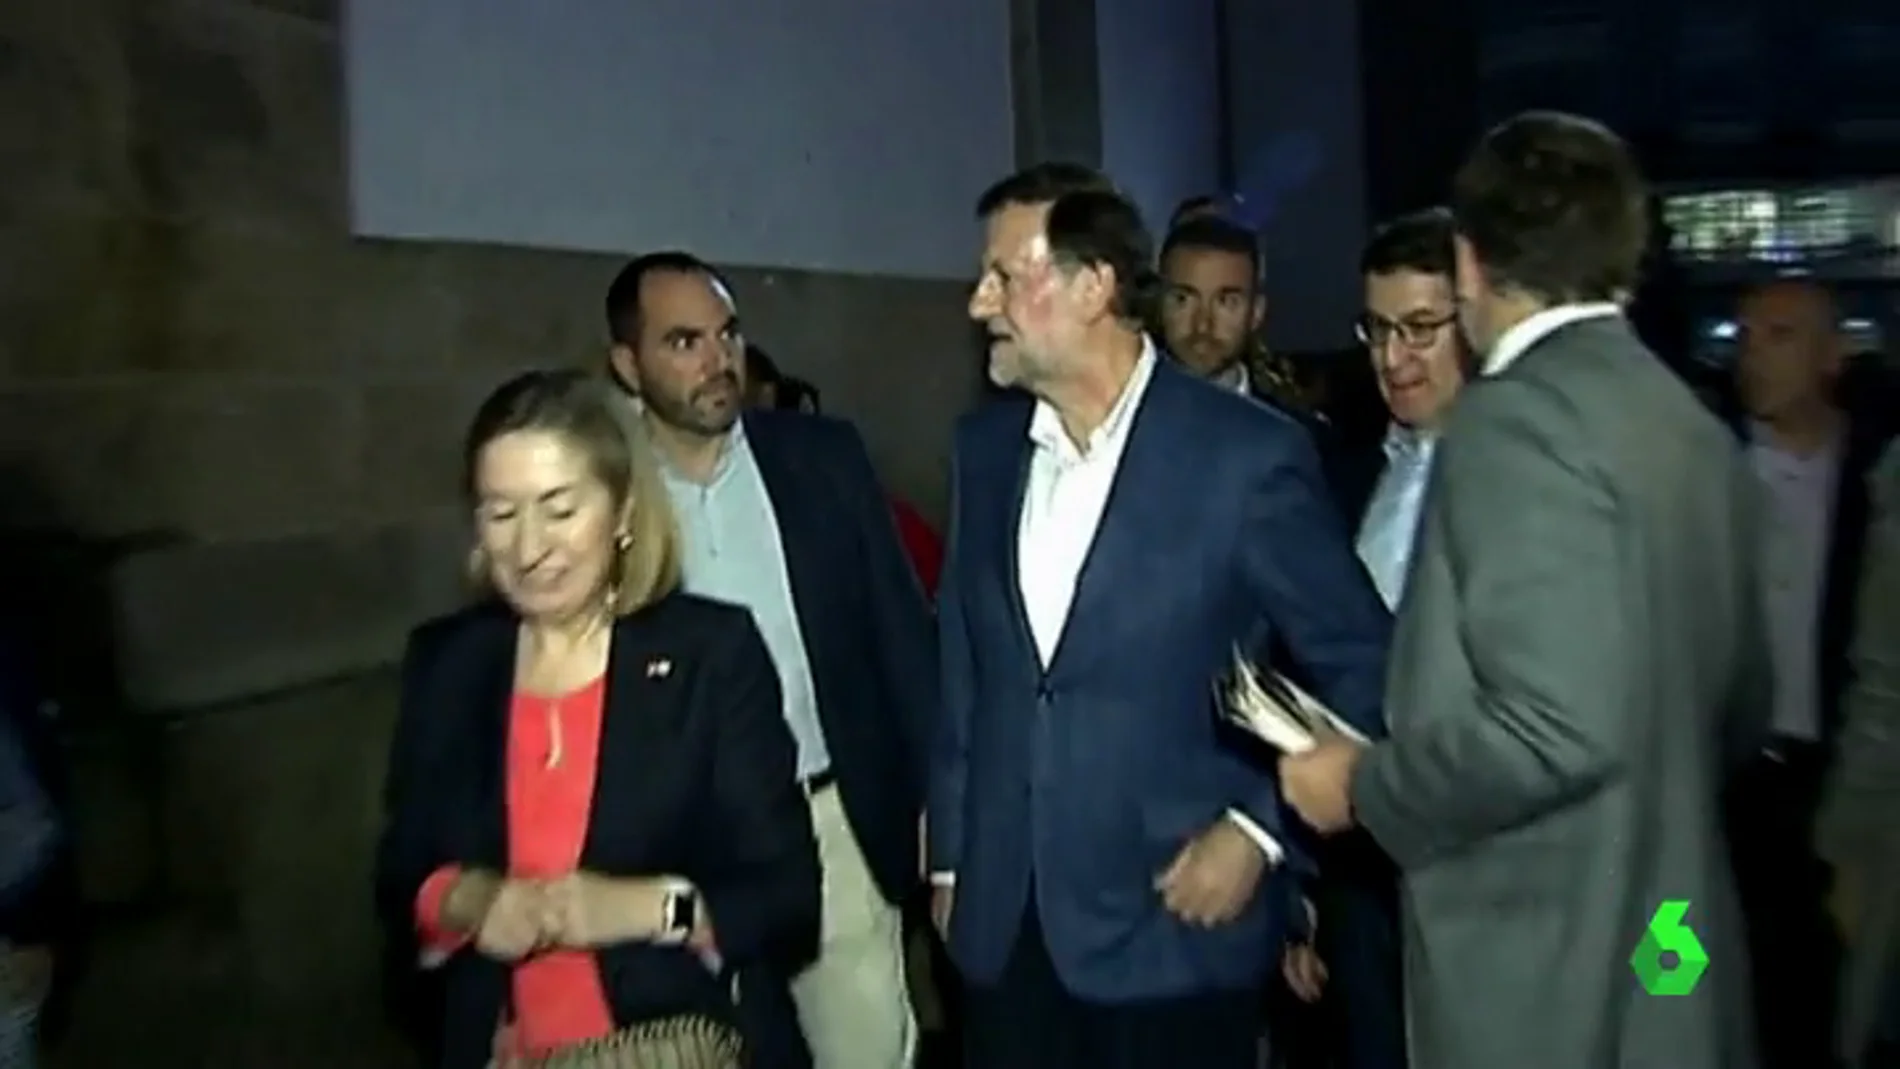 Mariano Rajoy momentos después de la agresión 